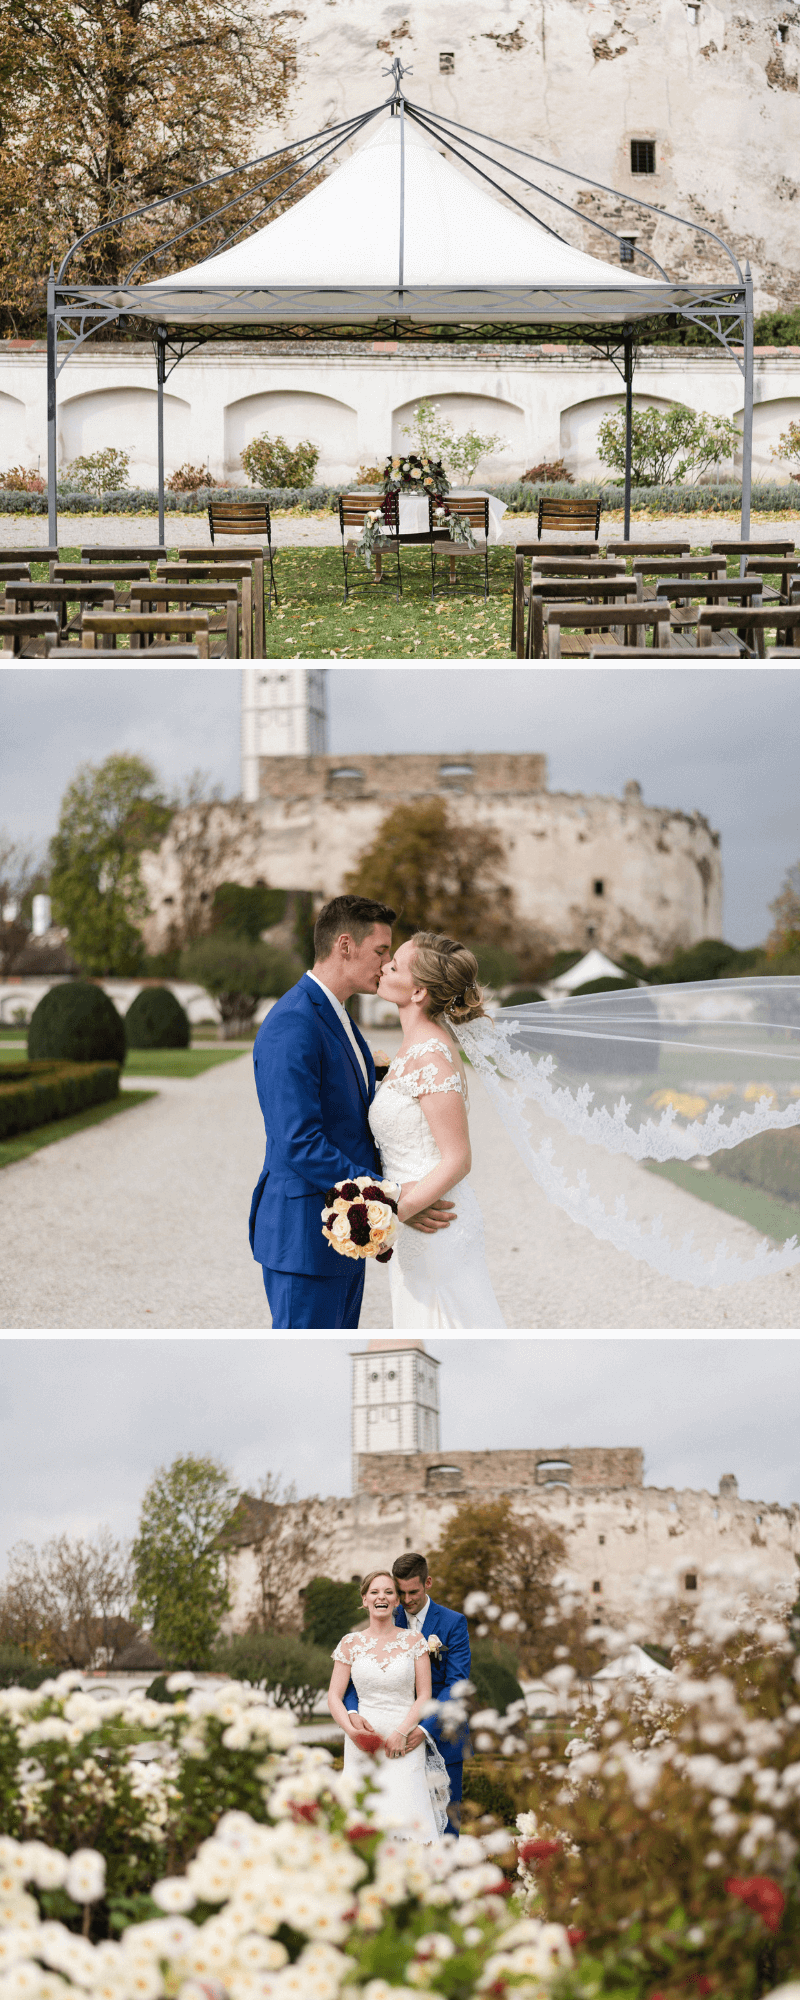 Burg-Hochzeit, Hochzeit Burg, Heiraten Burg, Hochzeit Pfirsich, Hochzeit Burgunder, Hochzeitsdeko elegant